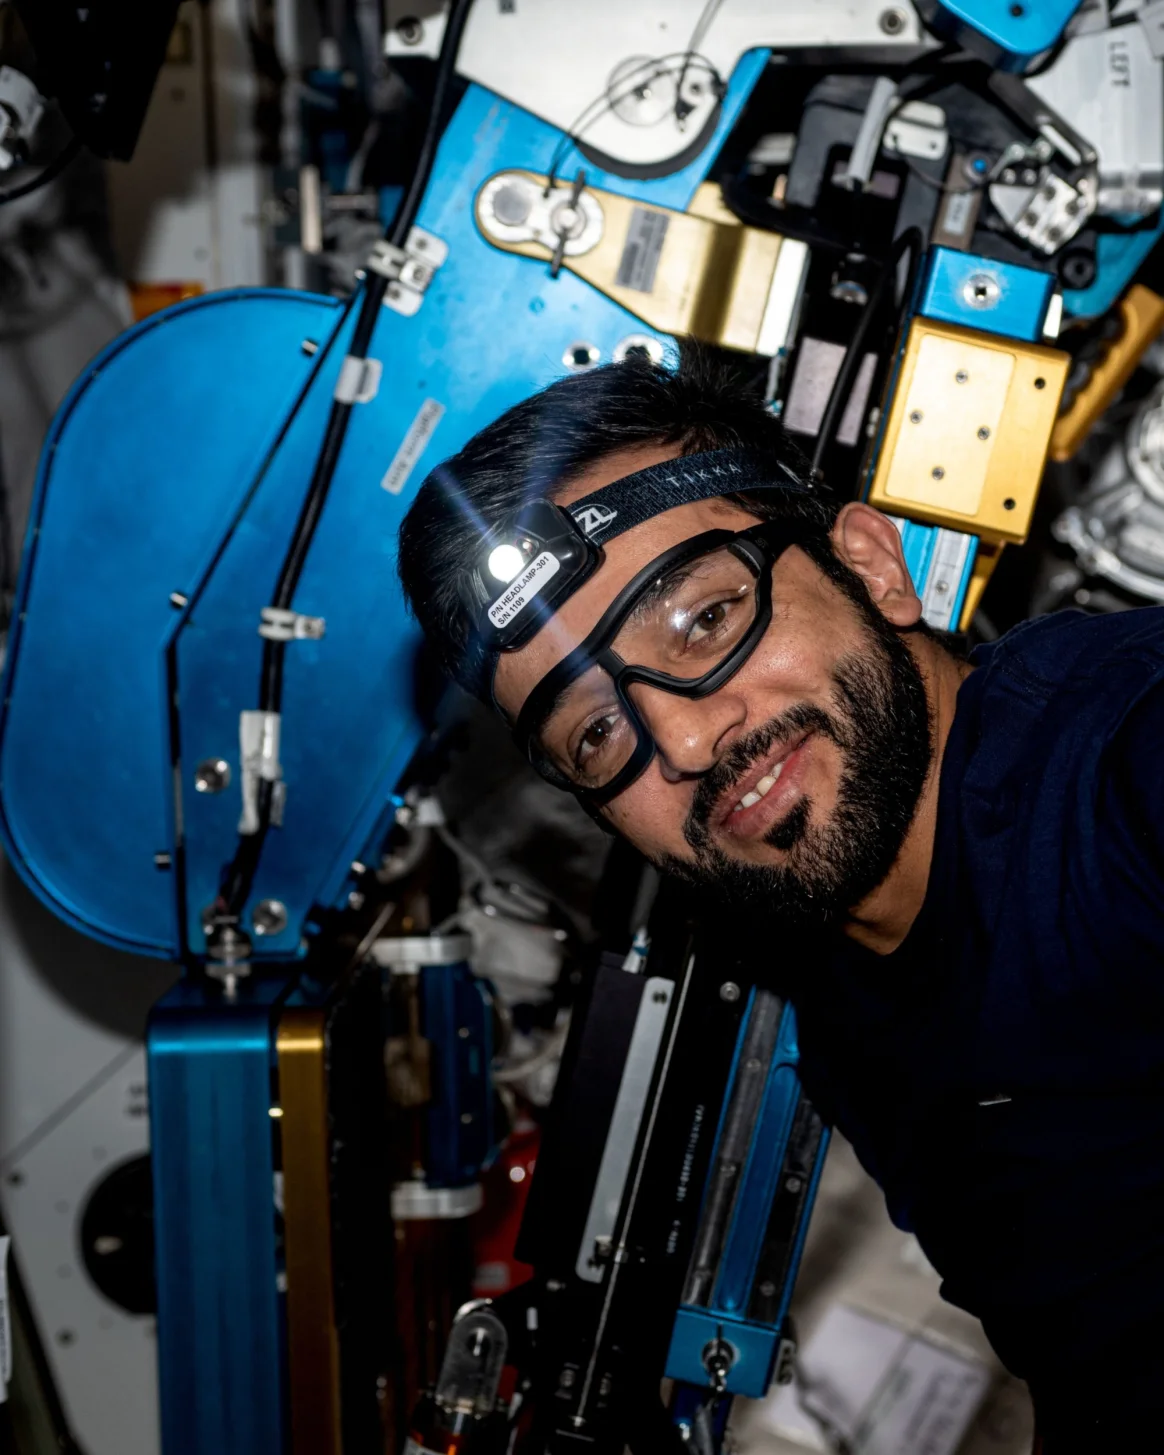 يعد أول رائد فضاء عربي يخوض مهمة "السير في الفضاء" خارج محطة الفضاء الدولية